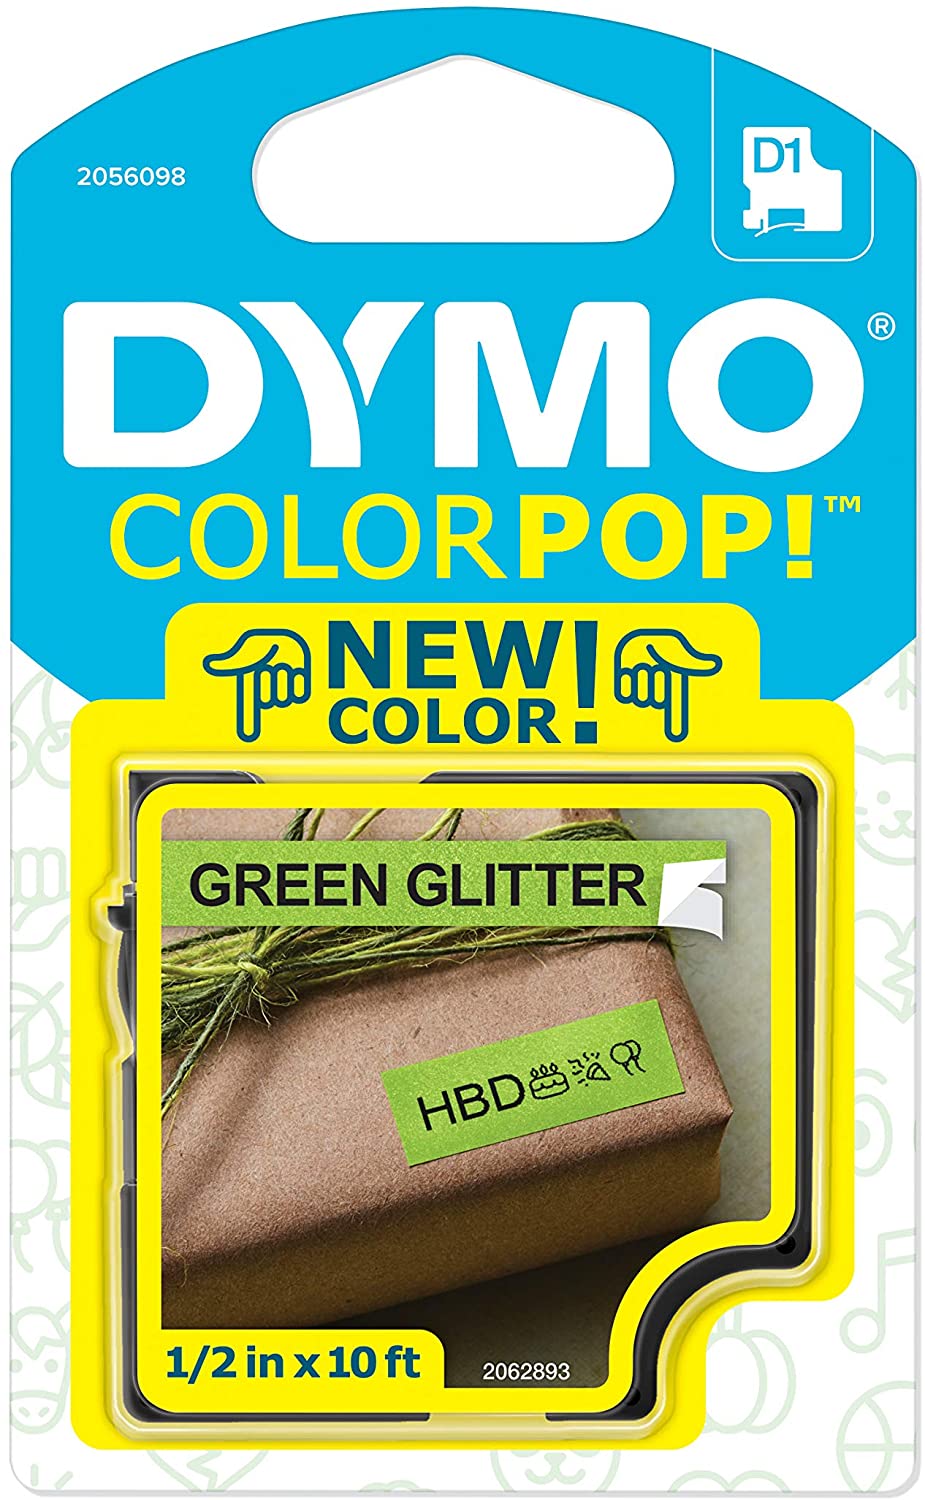 Fita Gliterizada para Rotulador LM/Color Pop - DYMO - 12mm x 3m Preto e Verde